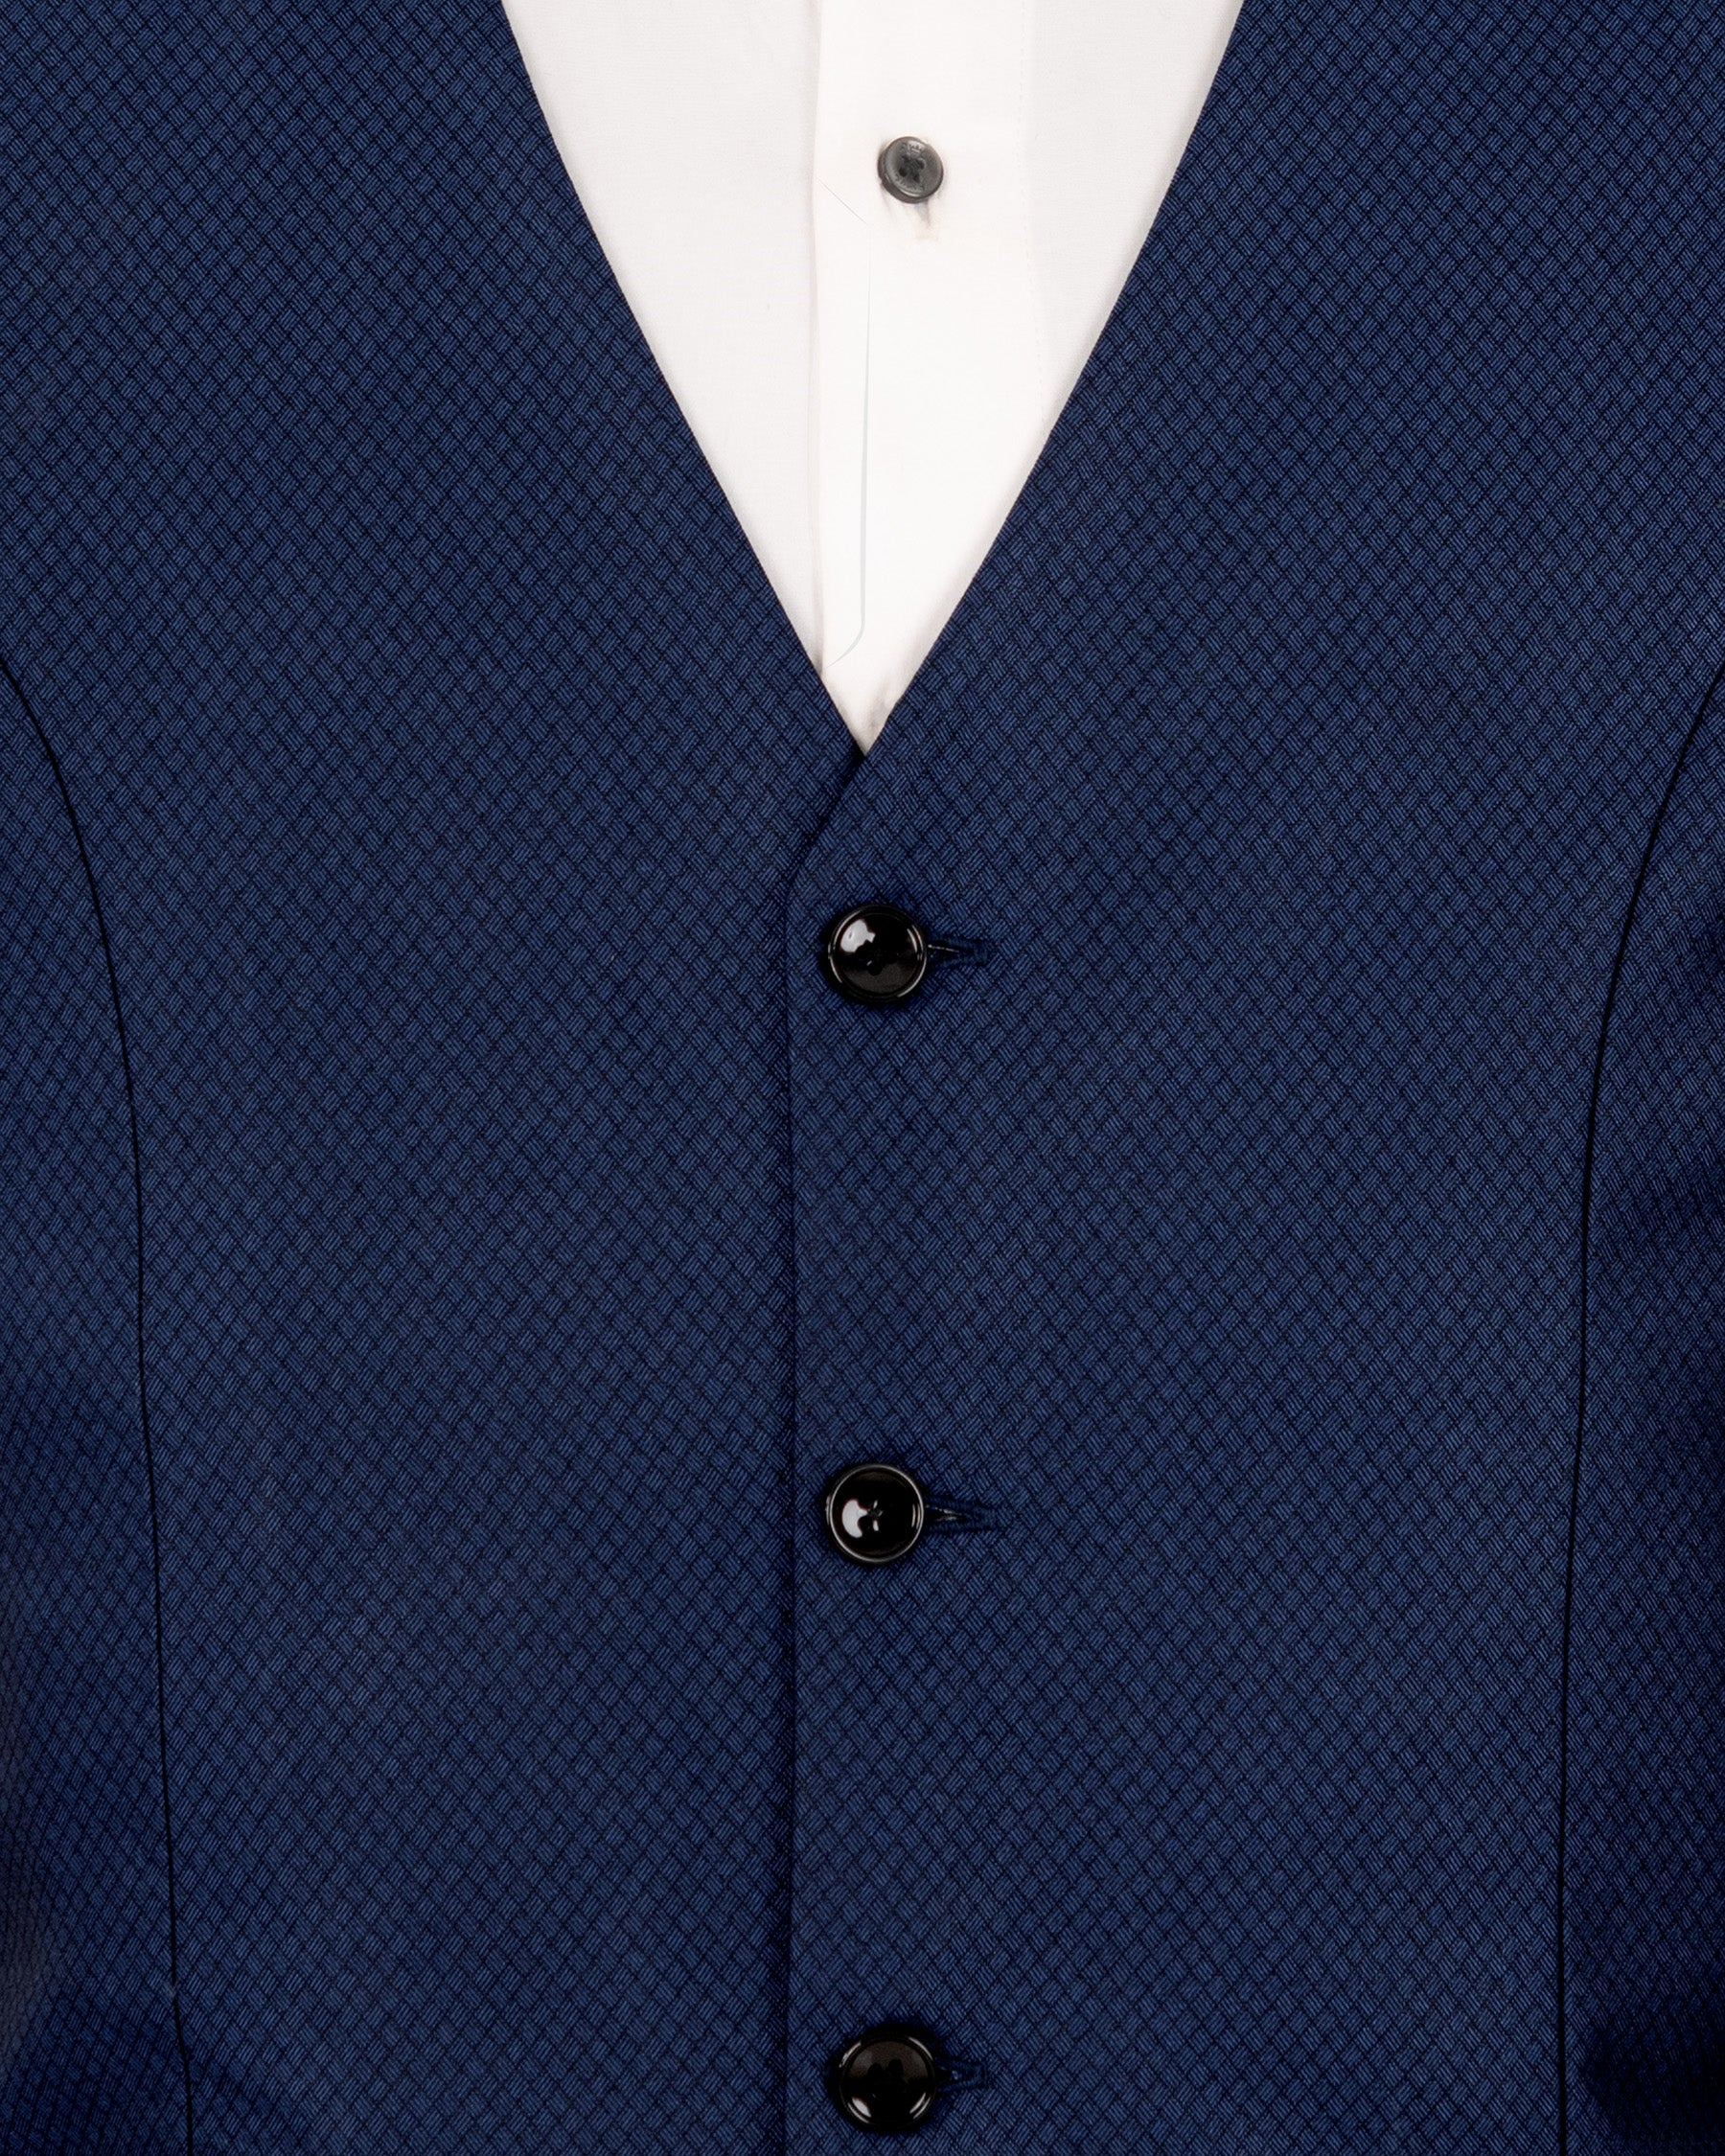 Port Gore Blue Subtle Textured Woolrich Tuxedo Suit